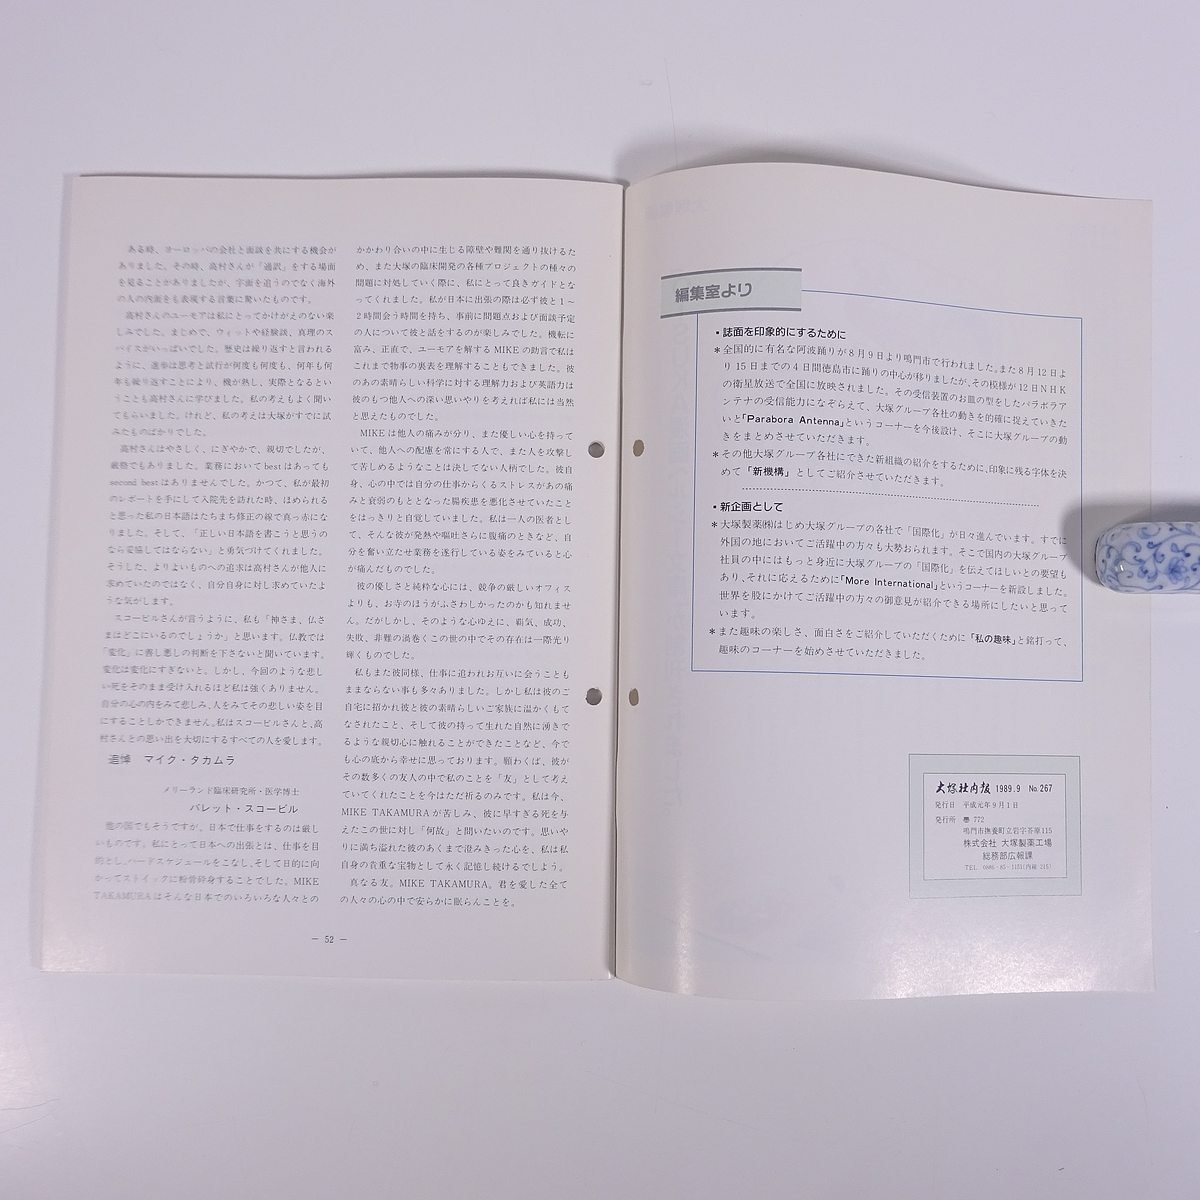 大塚社内報 No.267 1989/9 大塚製薬 小冊子 社内誌 社内報_画像10